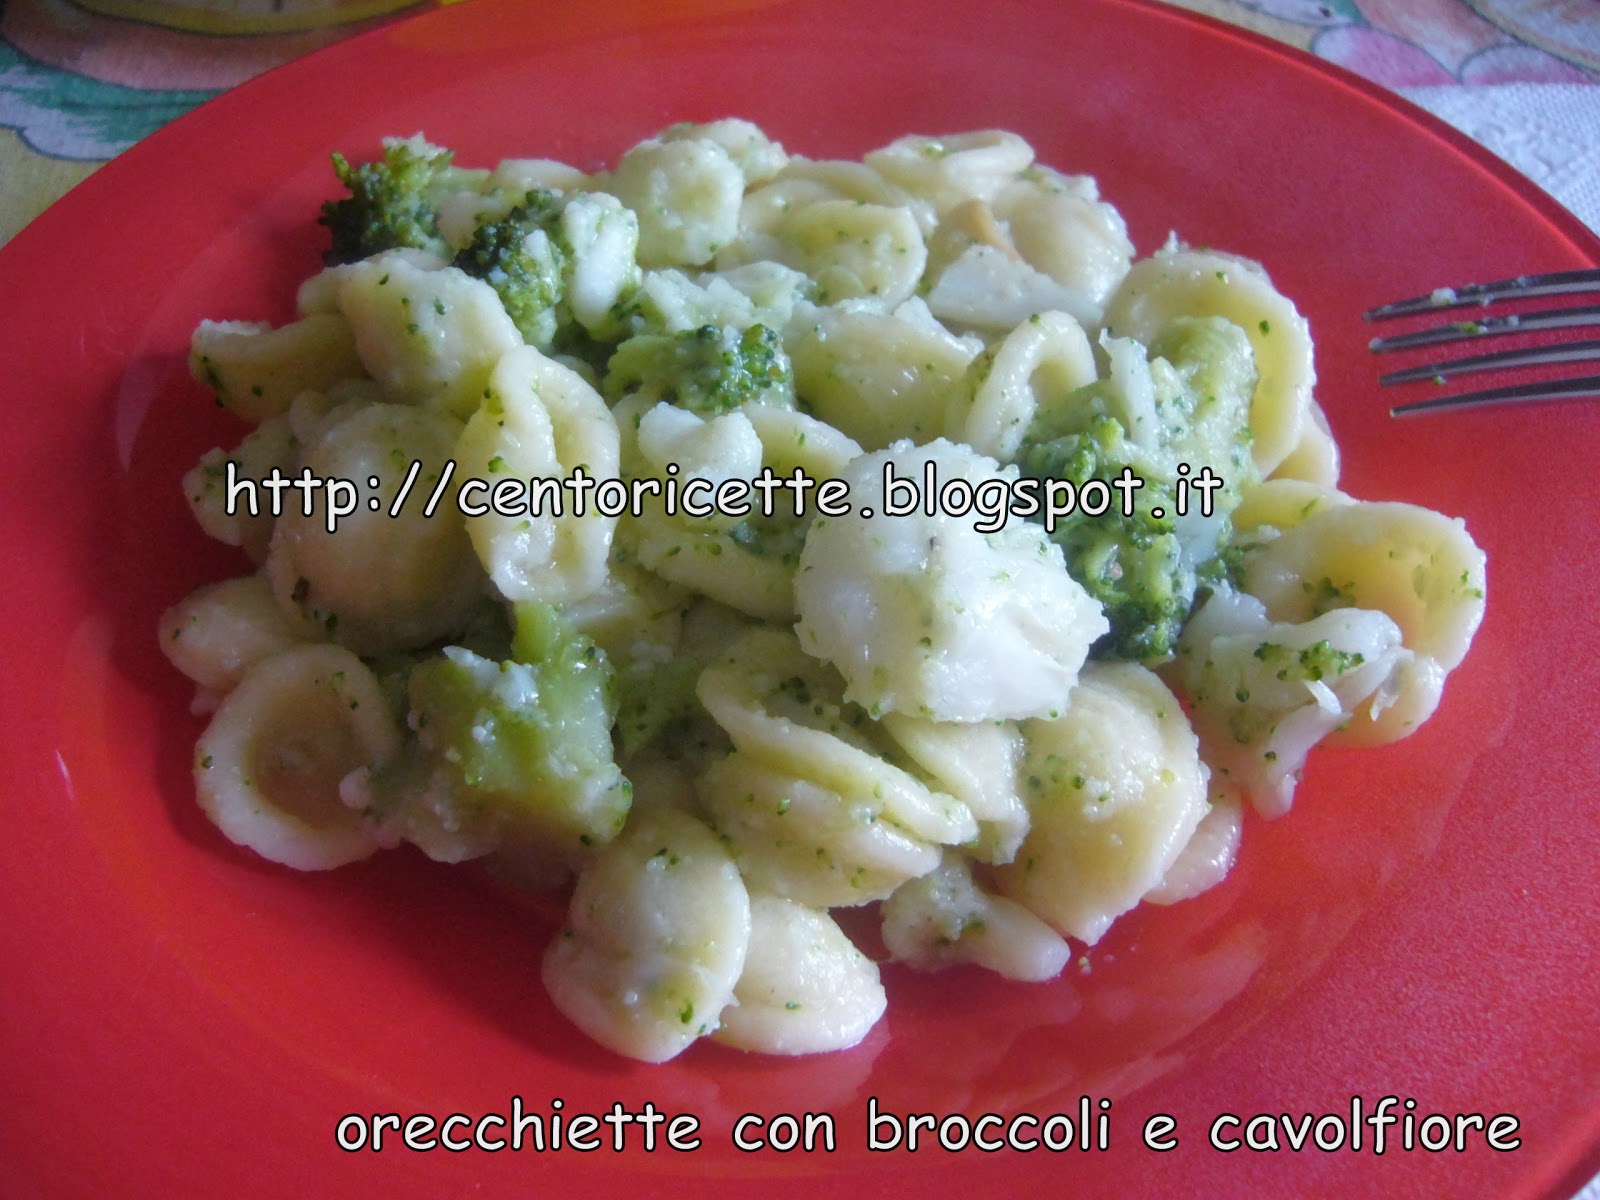 Orecchiette con broccoli e cavolfiore